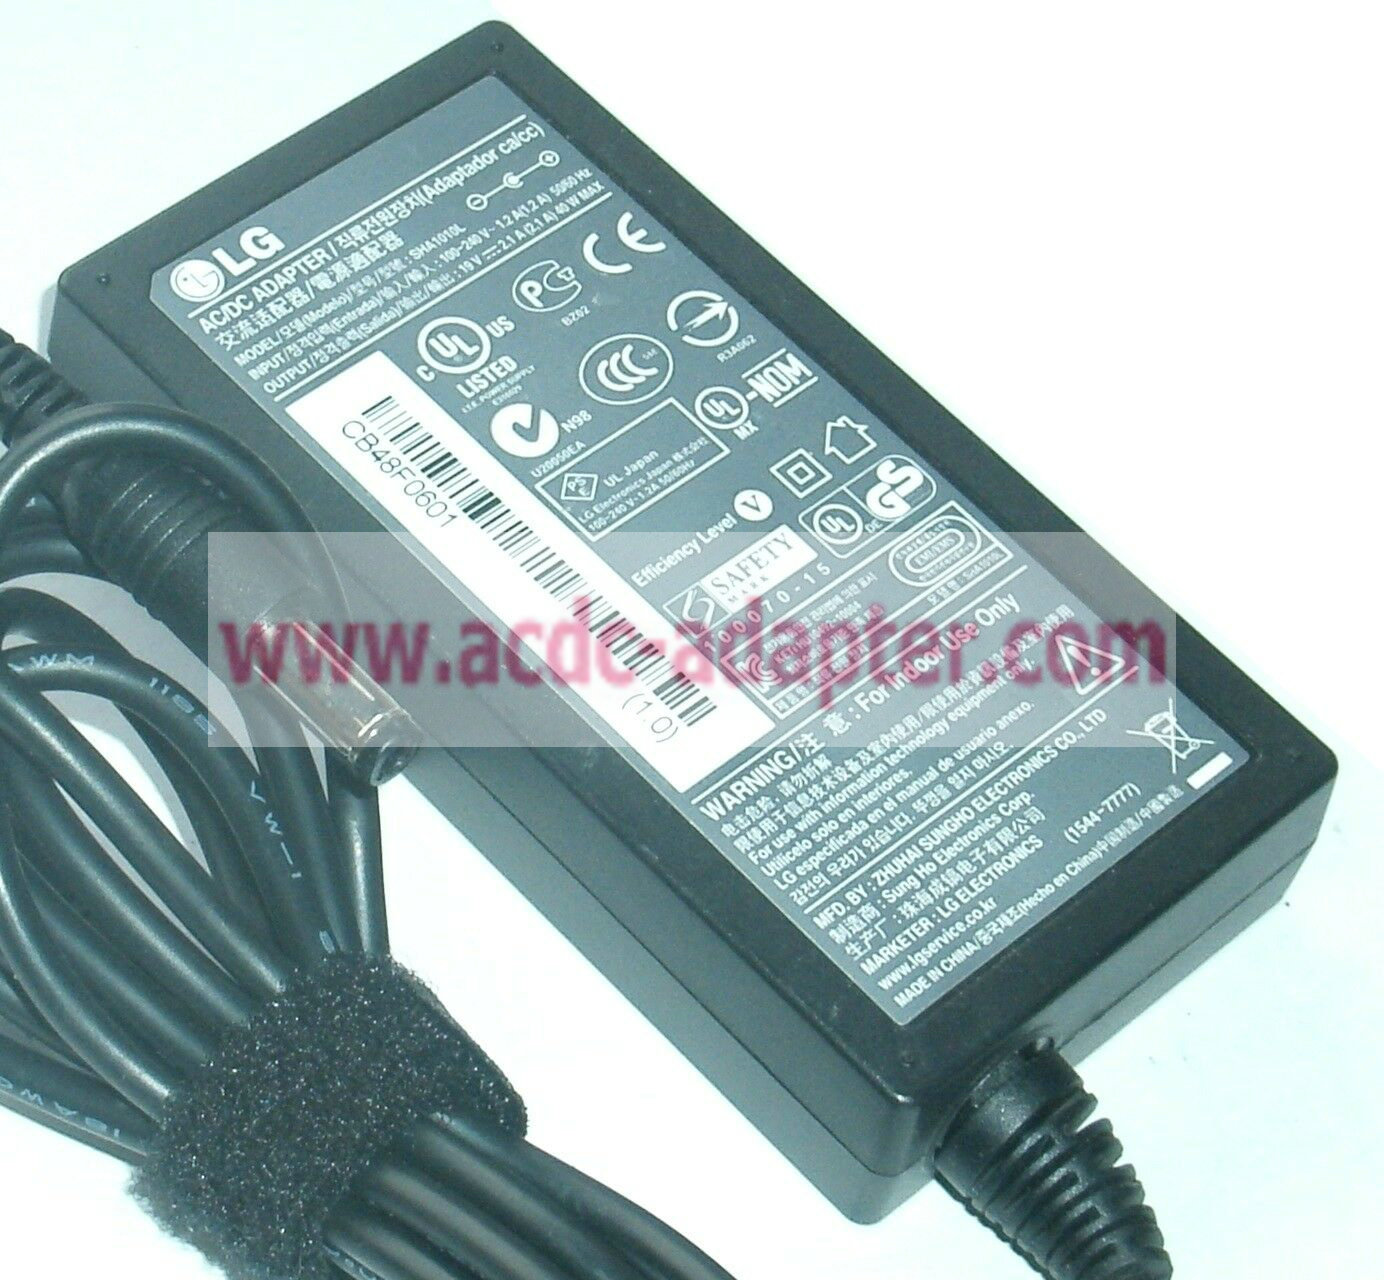 NEW LG SHA1010L 19V 2.1A 40W AC/DC ADAPTER - Click Image to Close